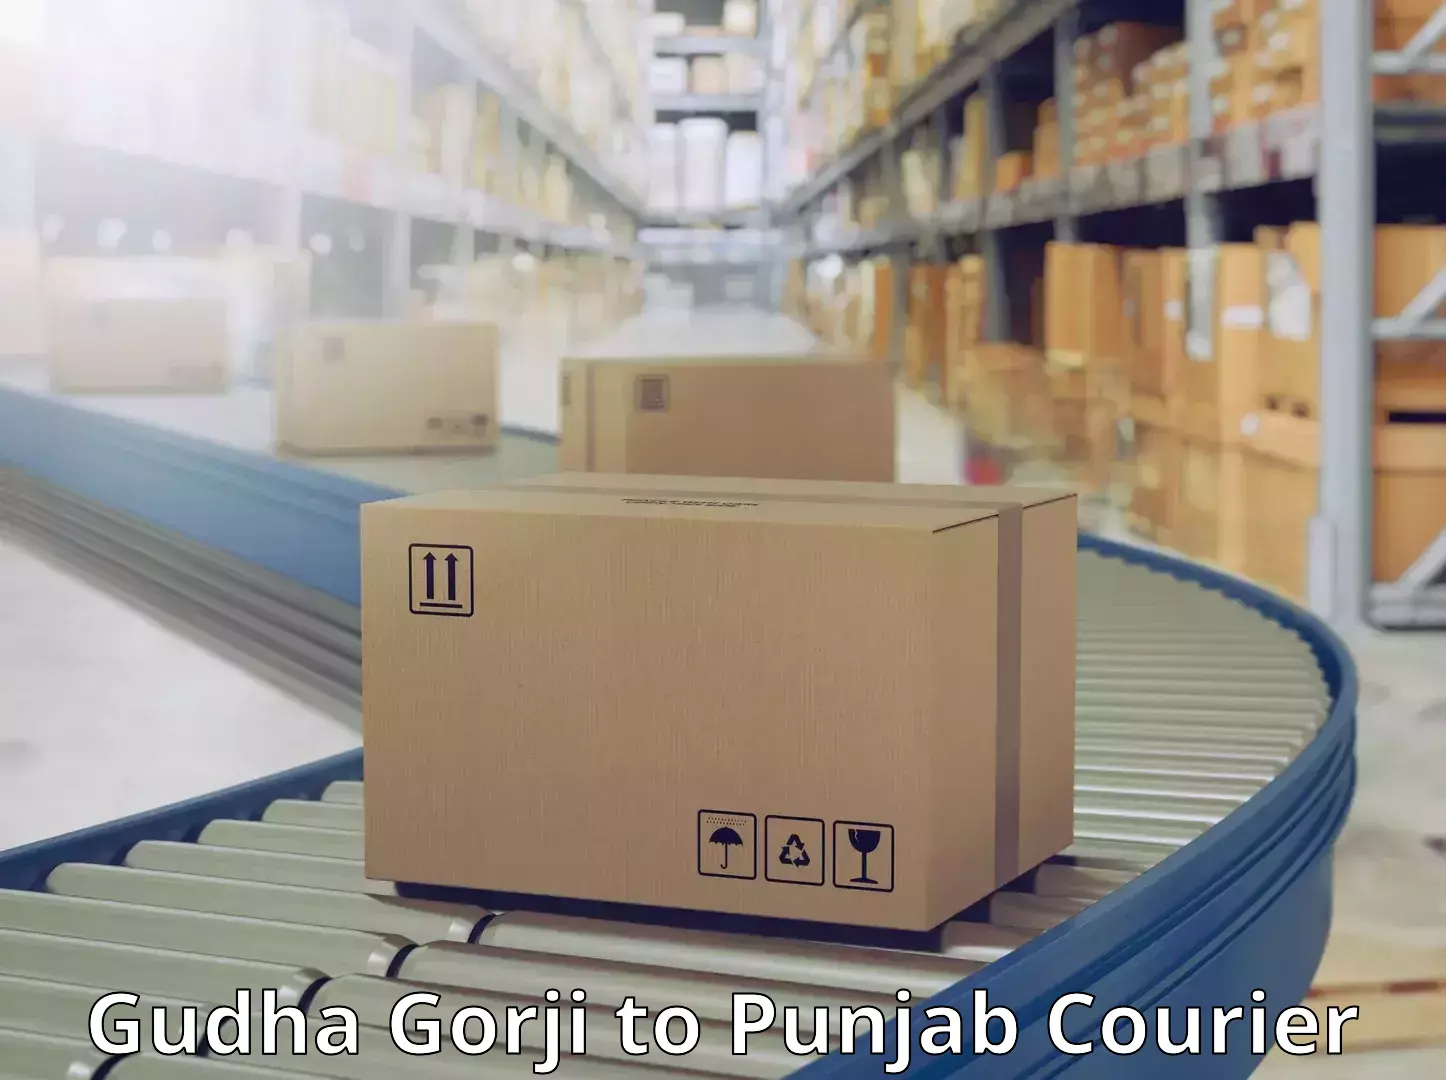 Express delivery network Gudha Gorji to Punjab